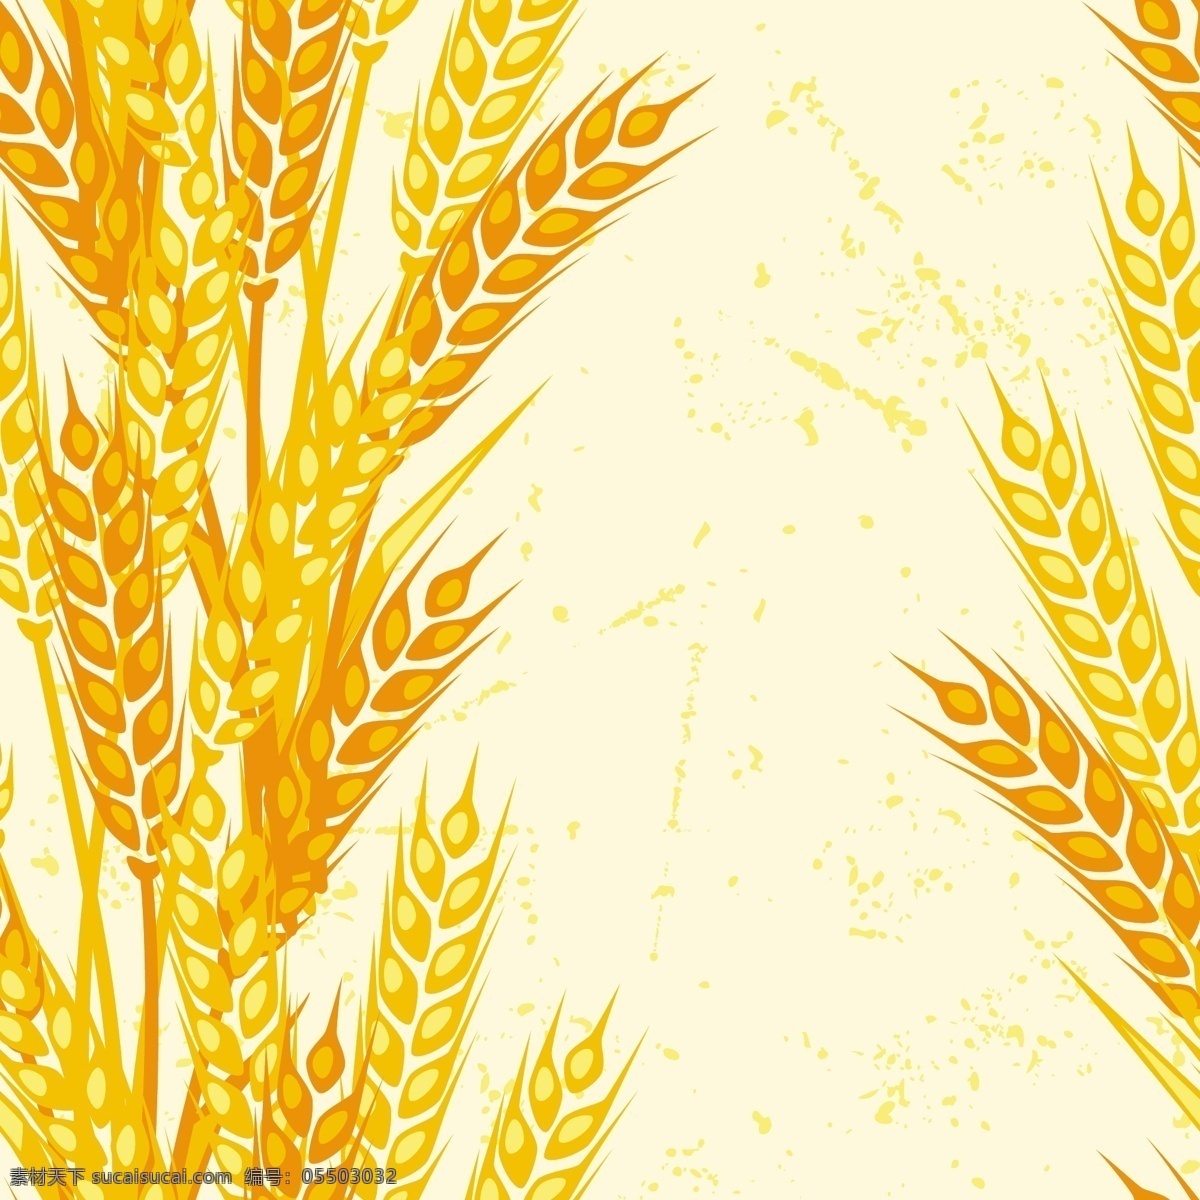 小麦 麦穗 背景 矢量 模板下载 麦子 小麦背景 麦穗背景 生活百科 矢量素材 白色